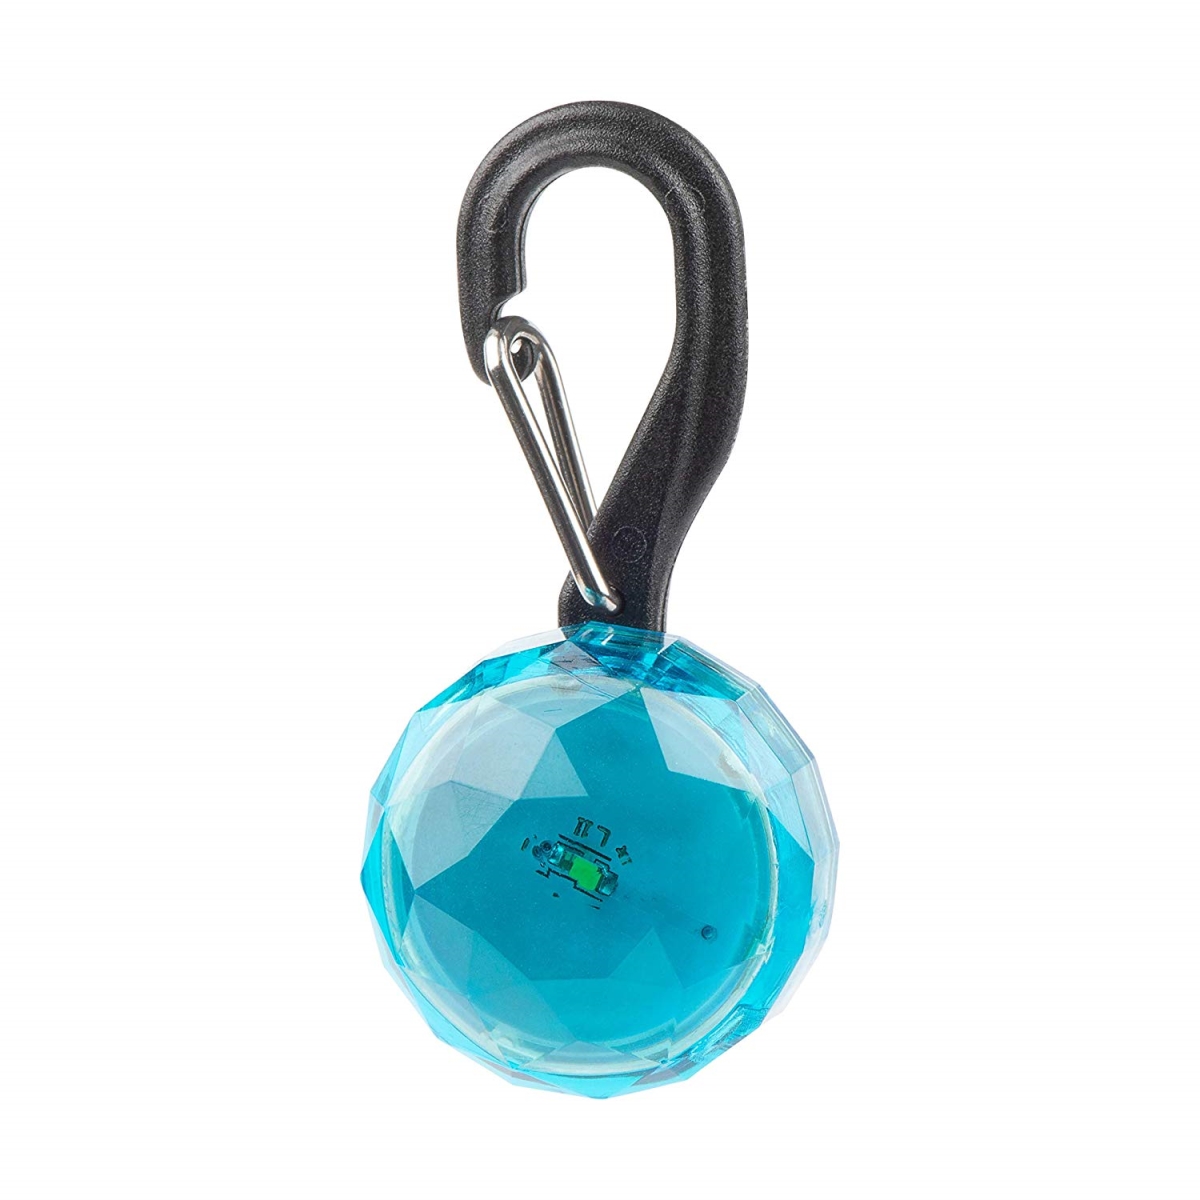 Nite Ize Nit-pcl02-03-69je 2019n Petlit Collar Light - Turquoise Jewel